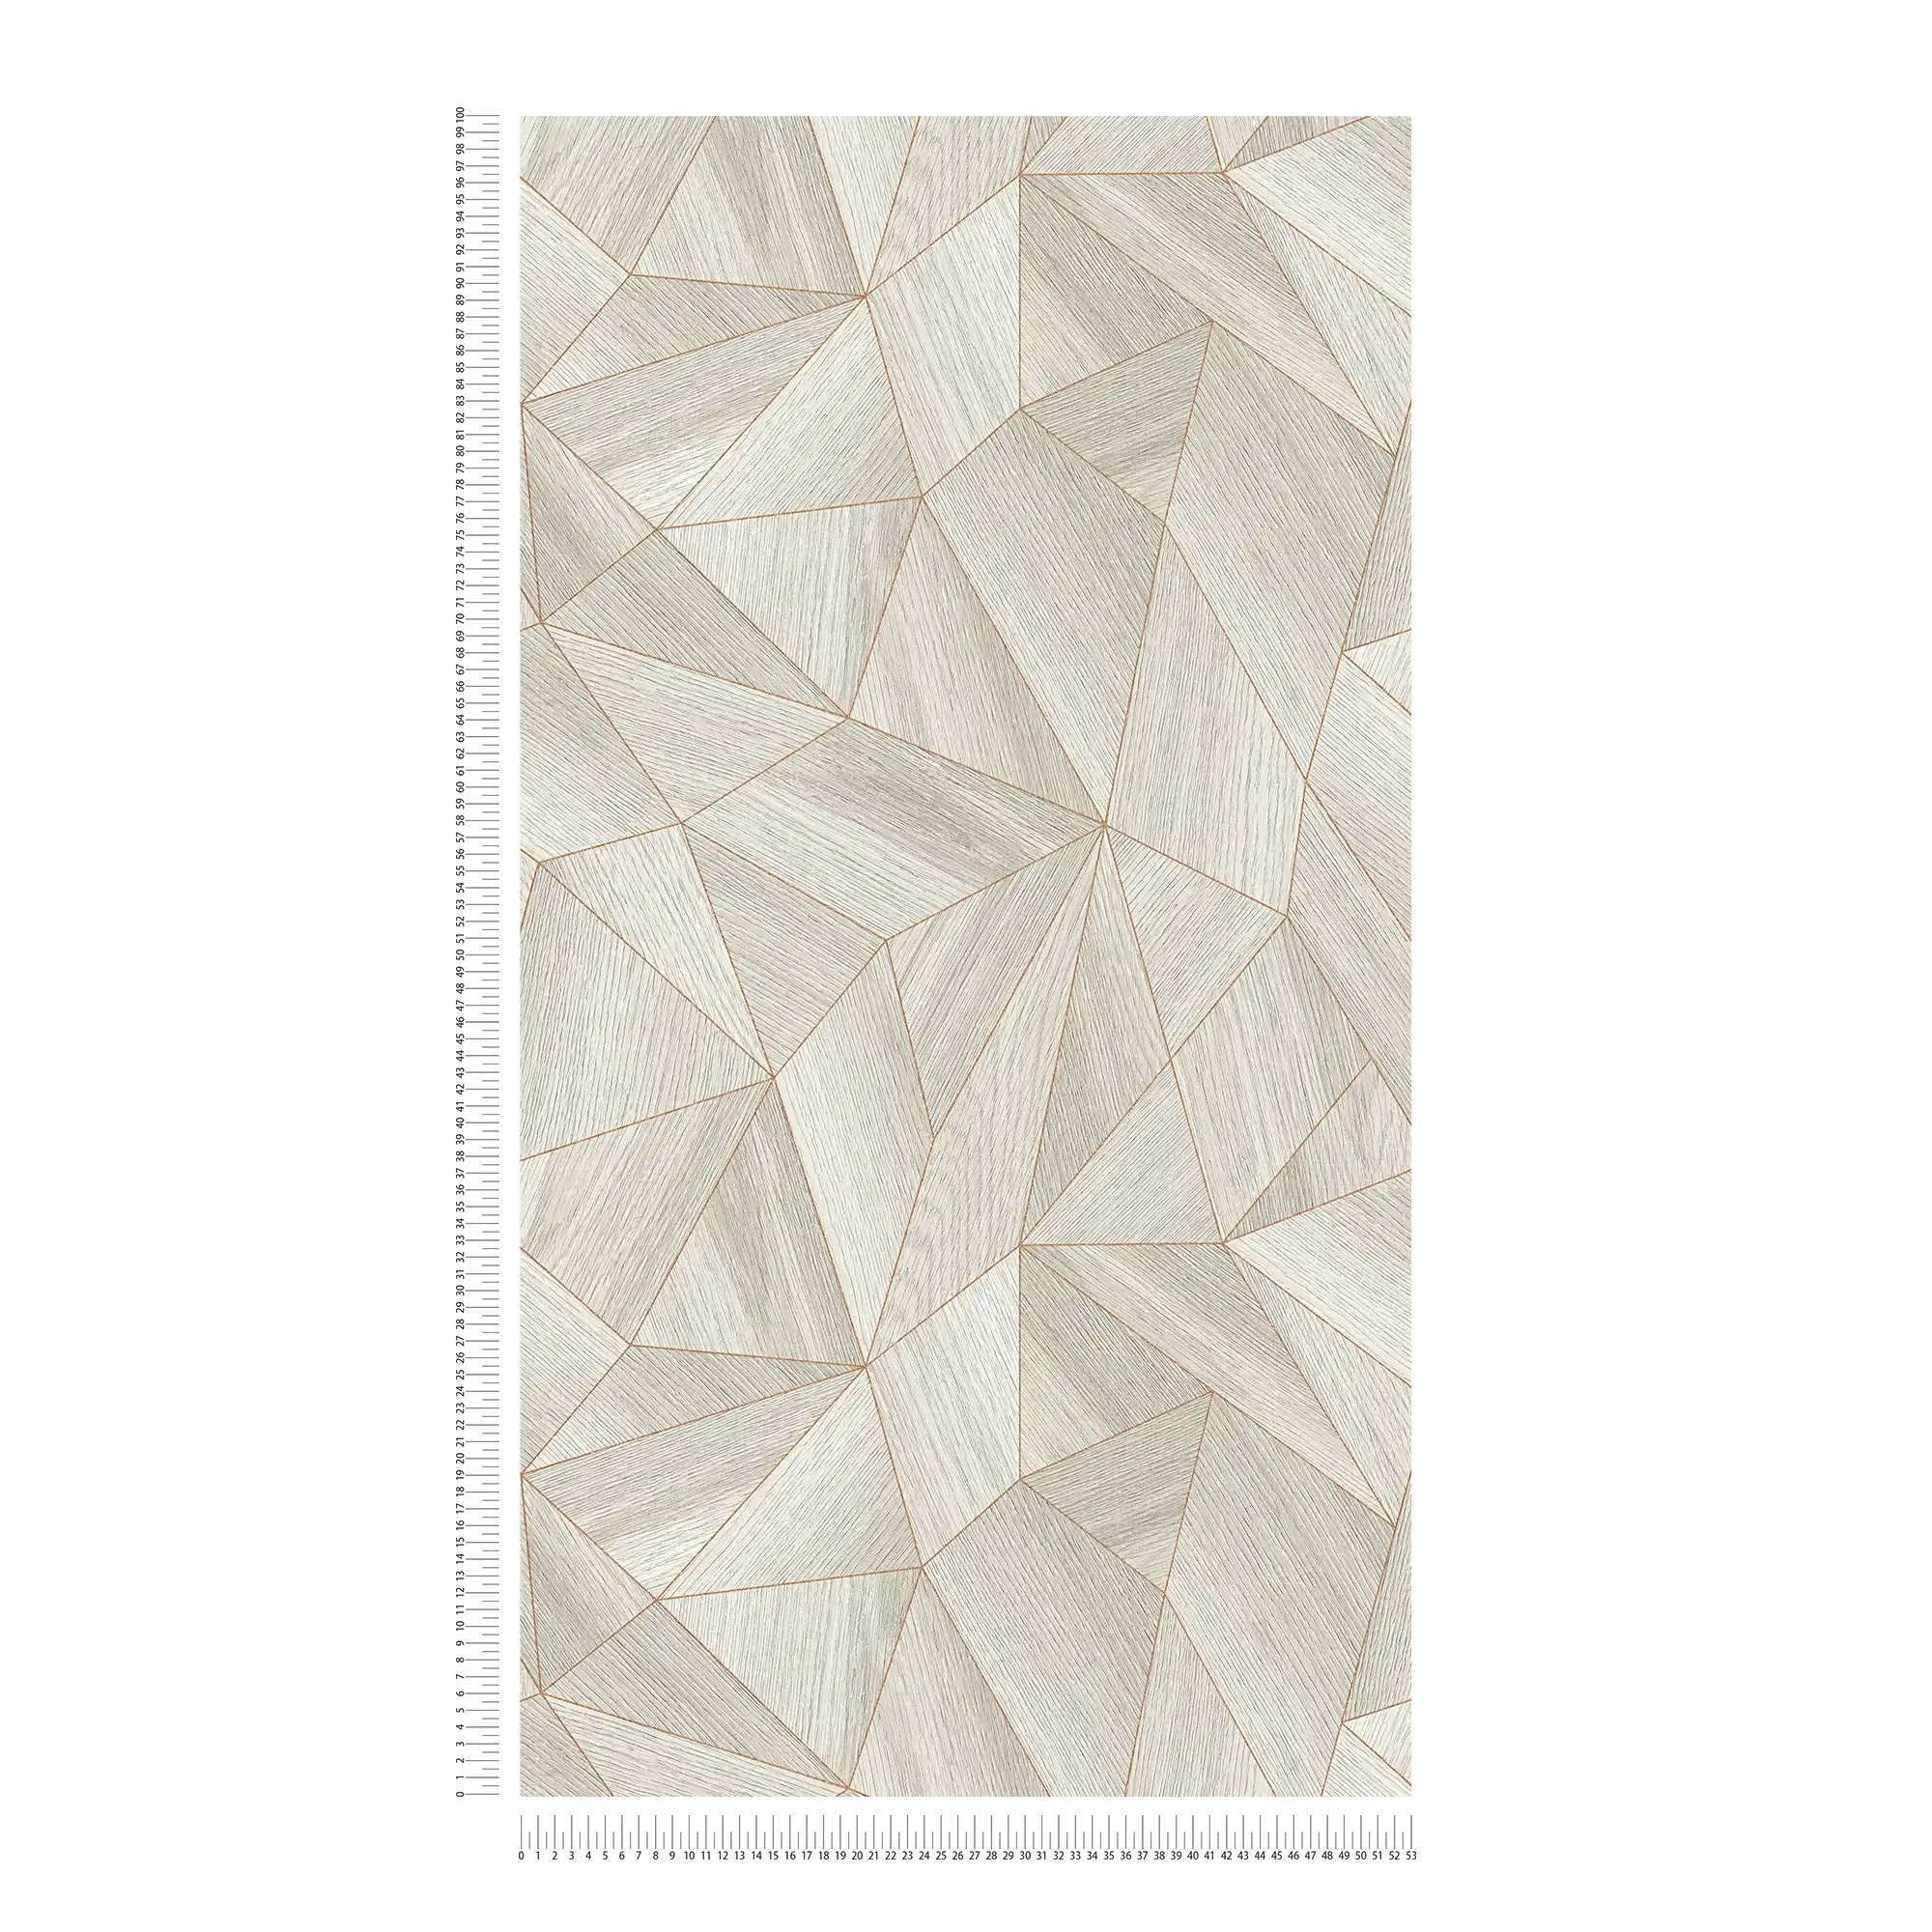             Carta da parati effetto legno dal design moderno e dall'effetto metallico - grigio, oro
        